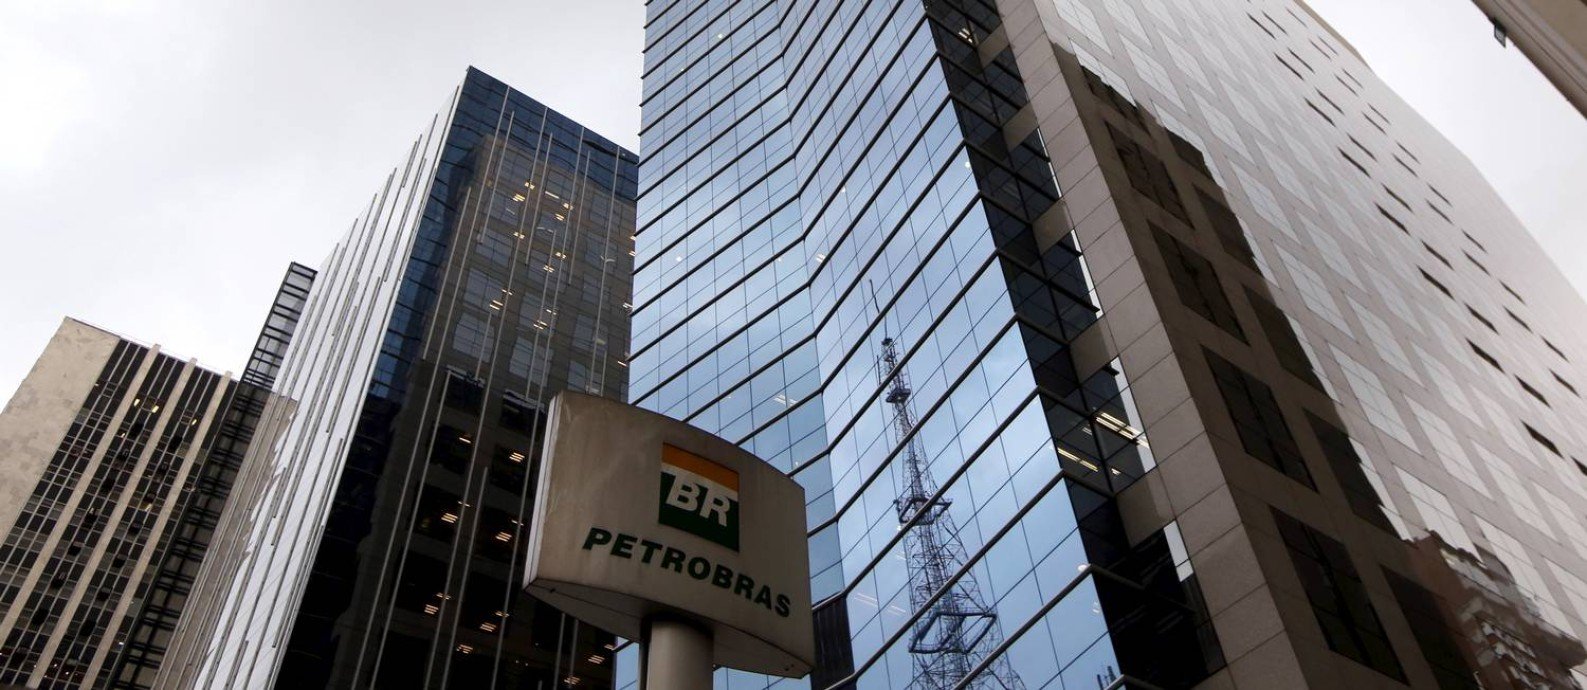 Petrobrs prepara PDV e deve fechar sede de SP at junho